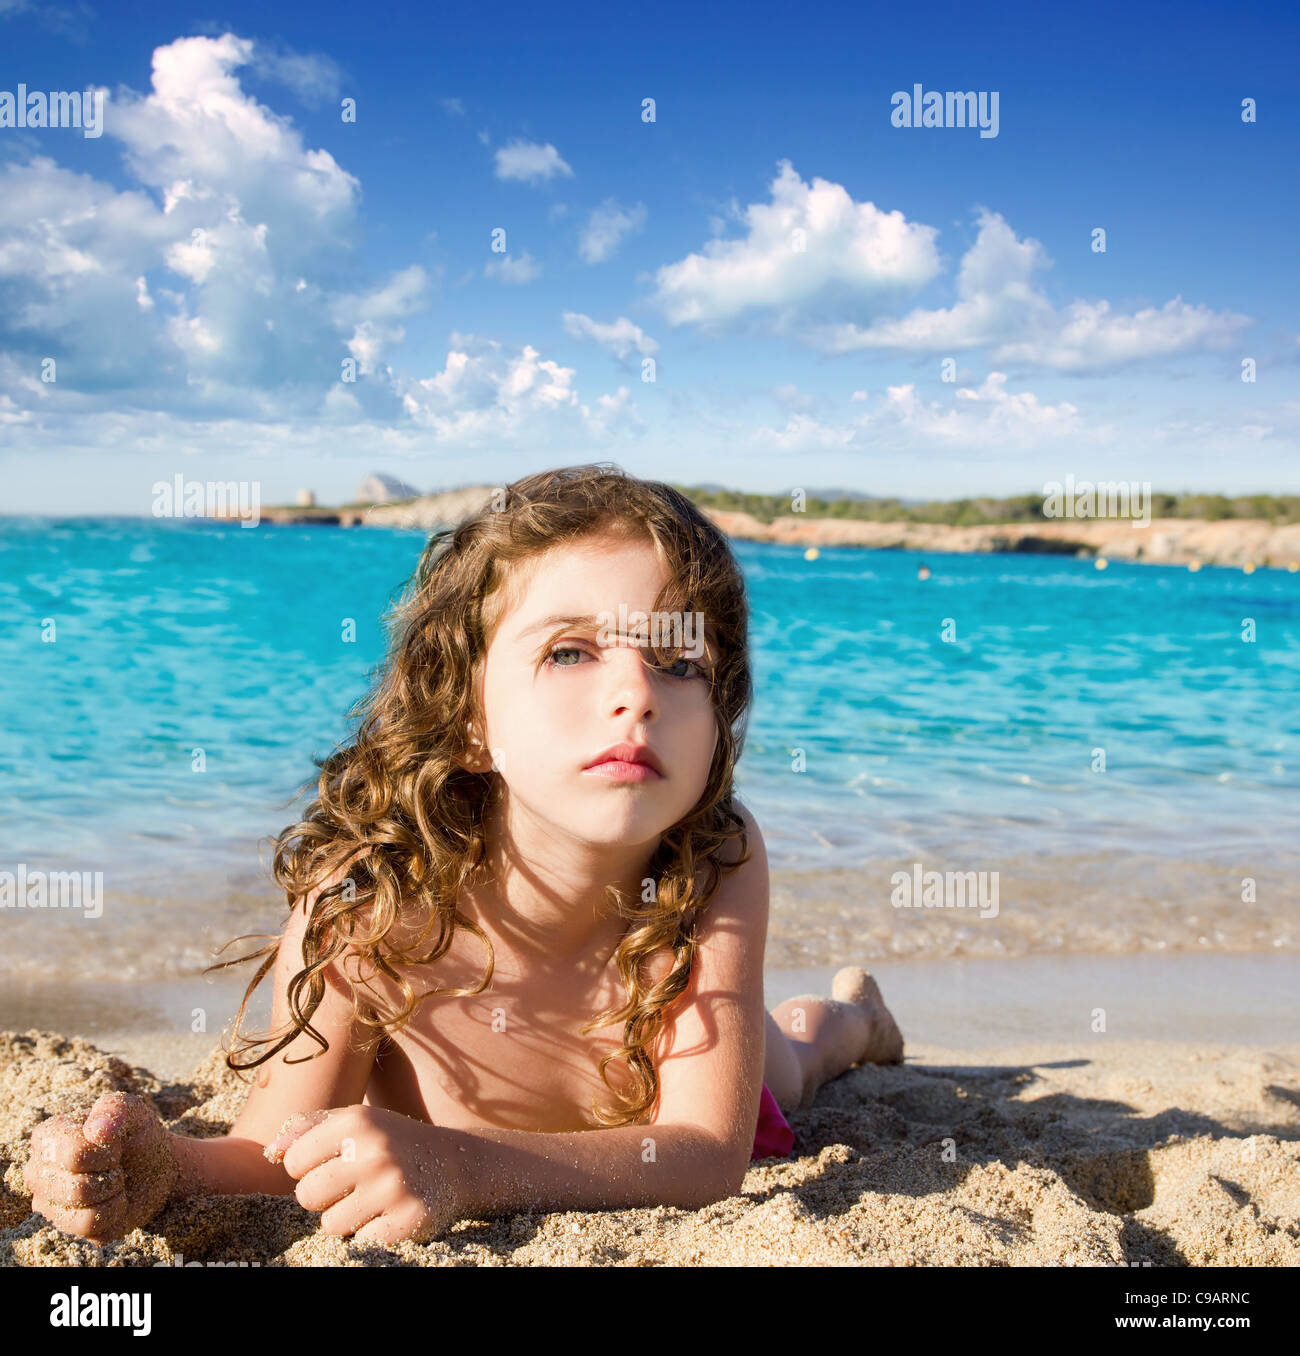 Десятилетняя девочка на берегу моря